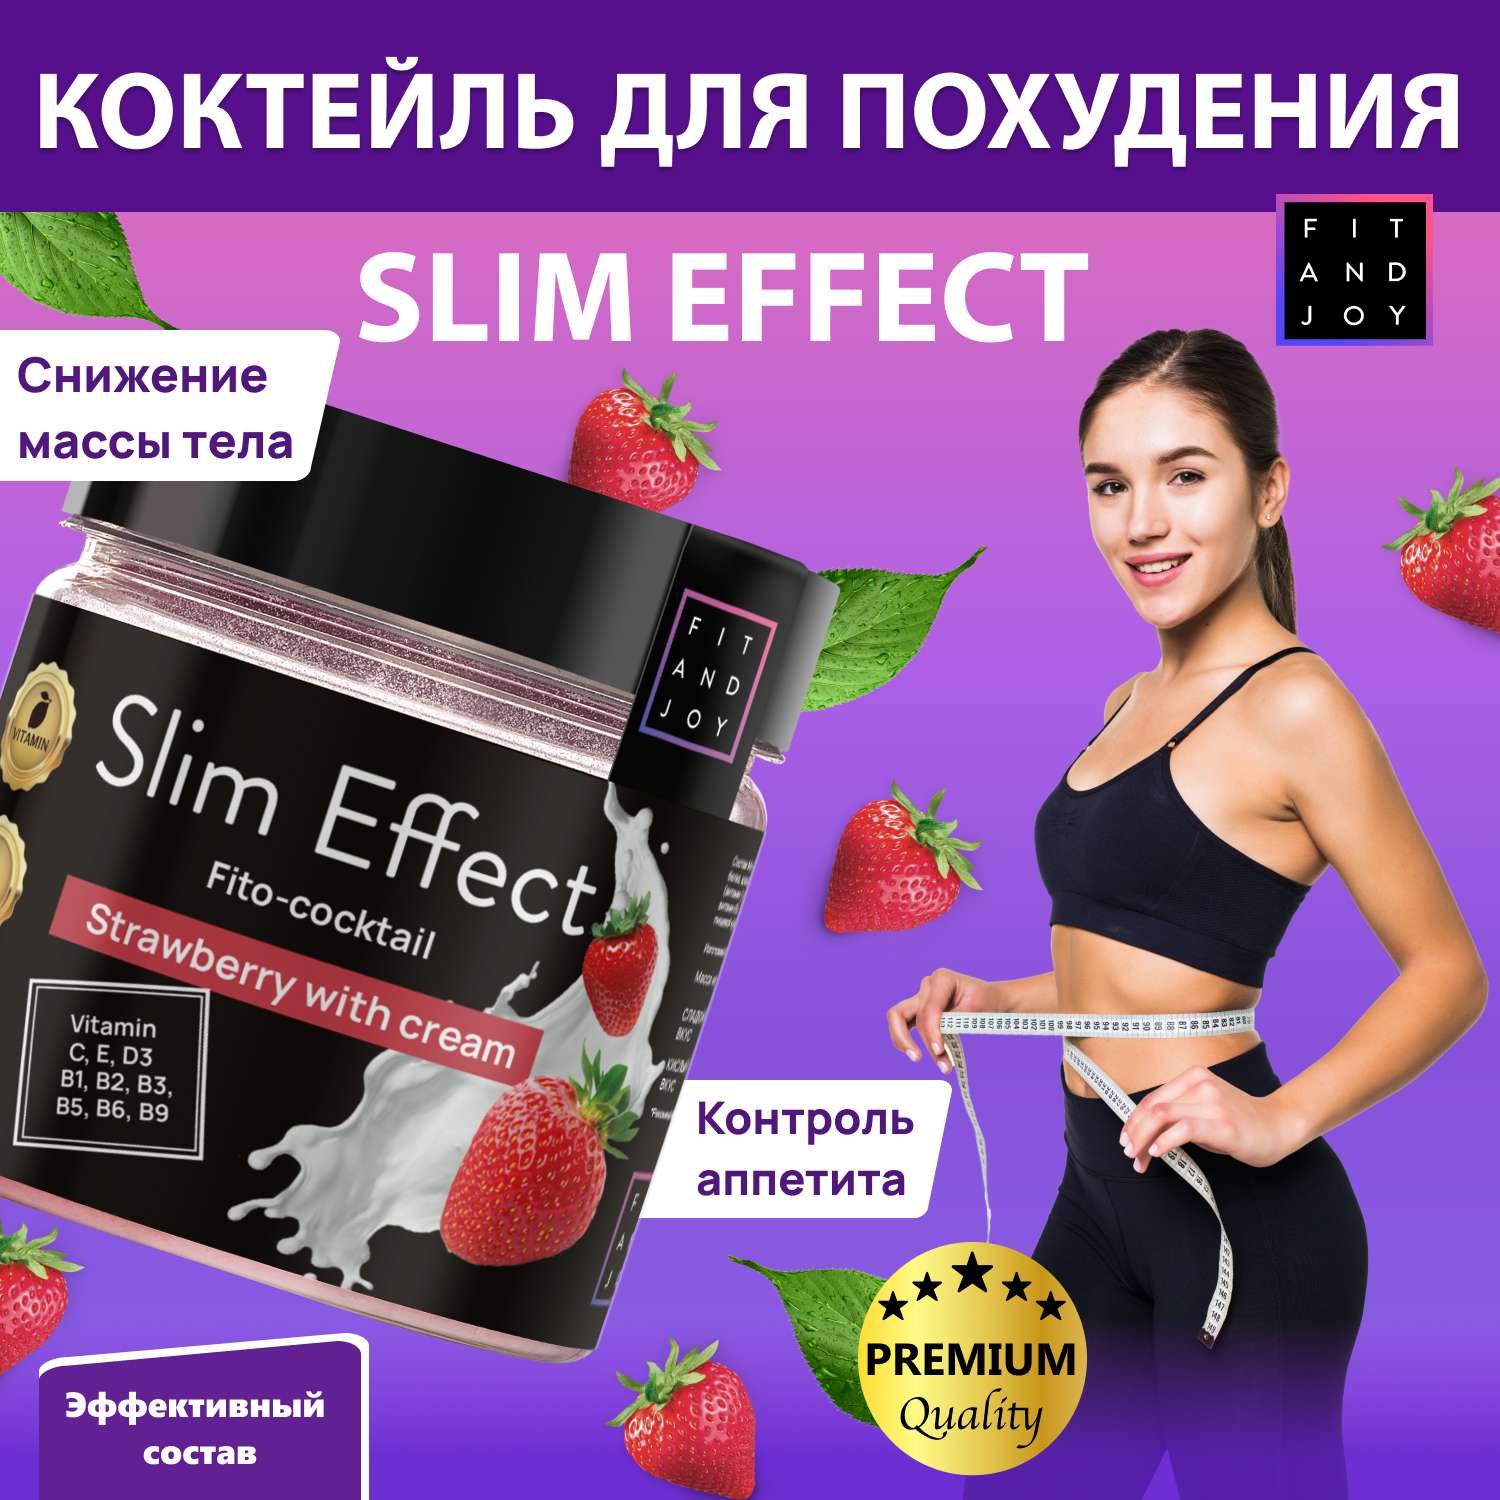 Фитококтейль FIT AND JOY для похудения Slim Effect Клубника Сливки - фото 2